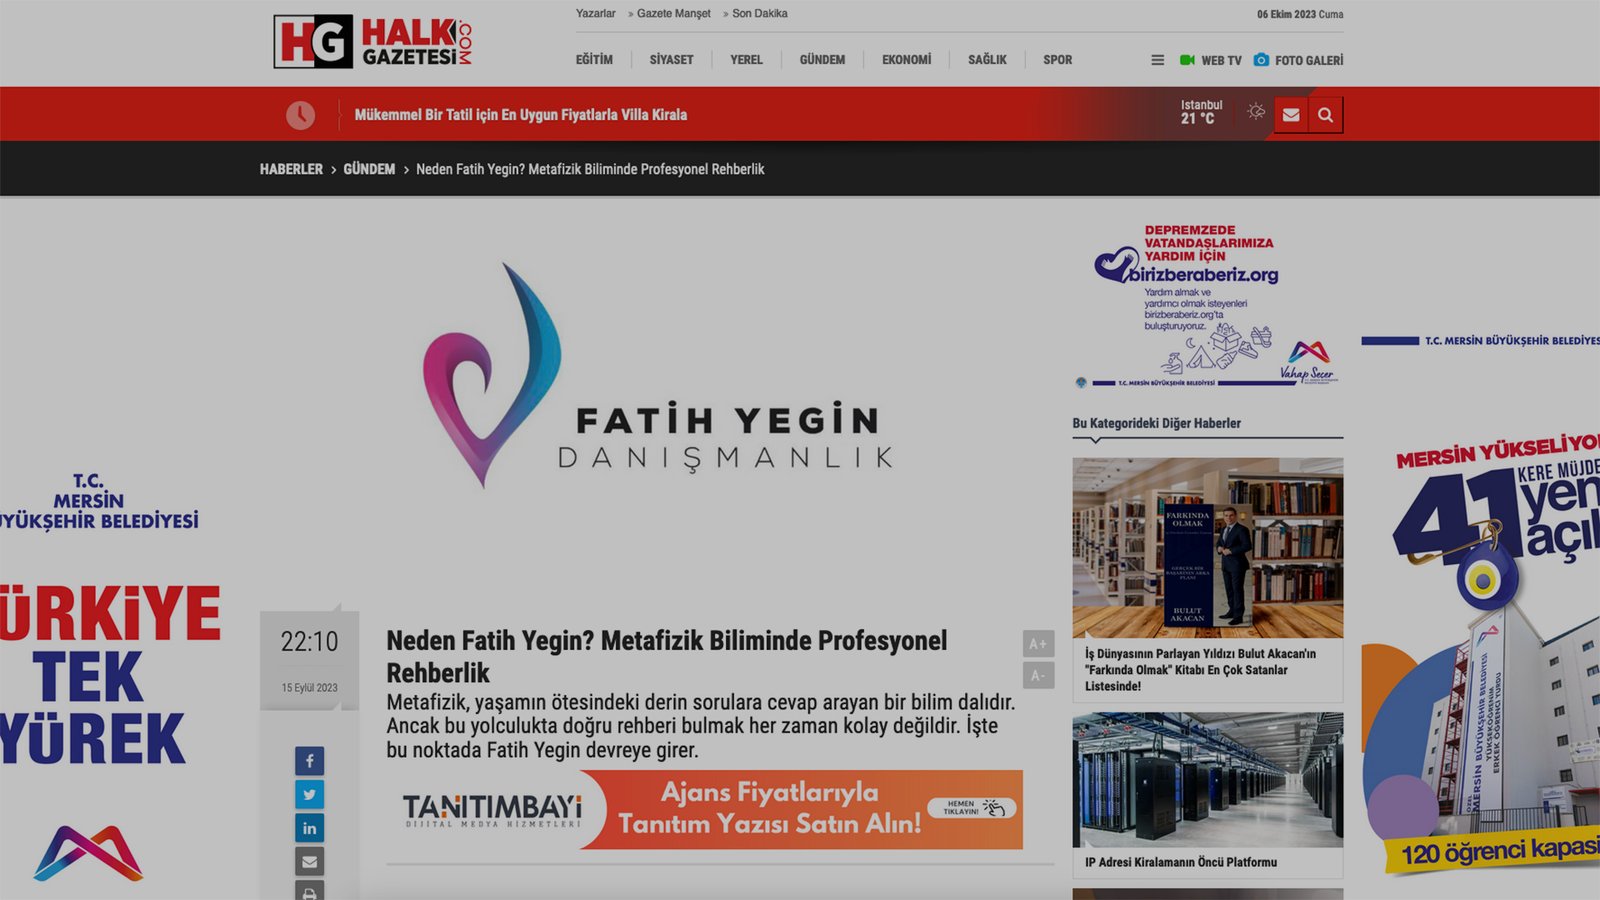 Neden Fatih Yegin? Metafizik Biliminde Profesyonel Rehberlik